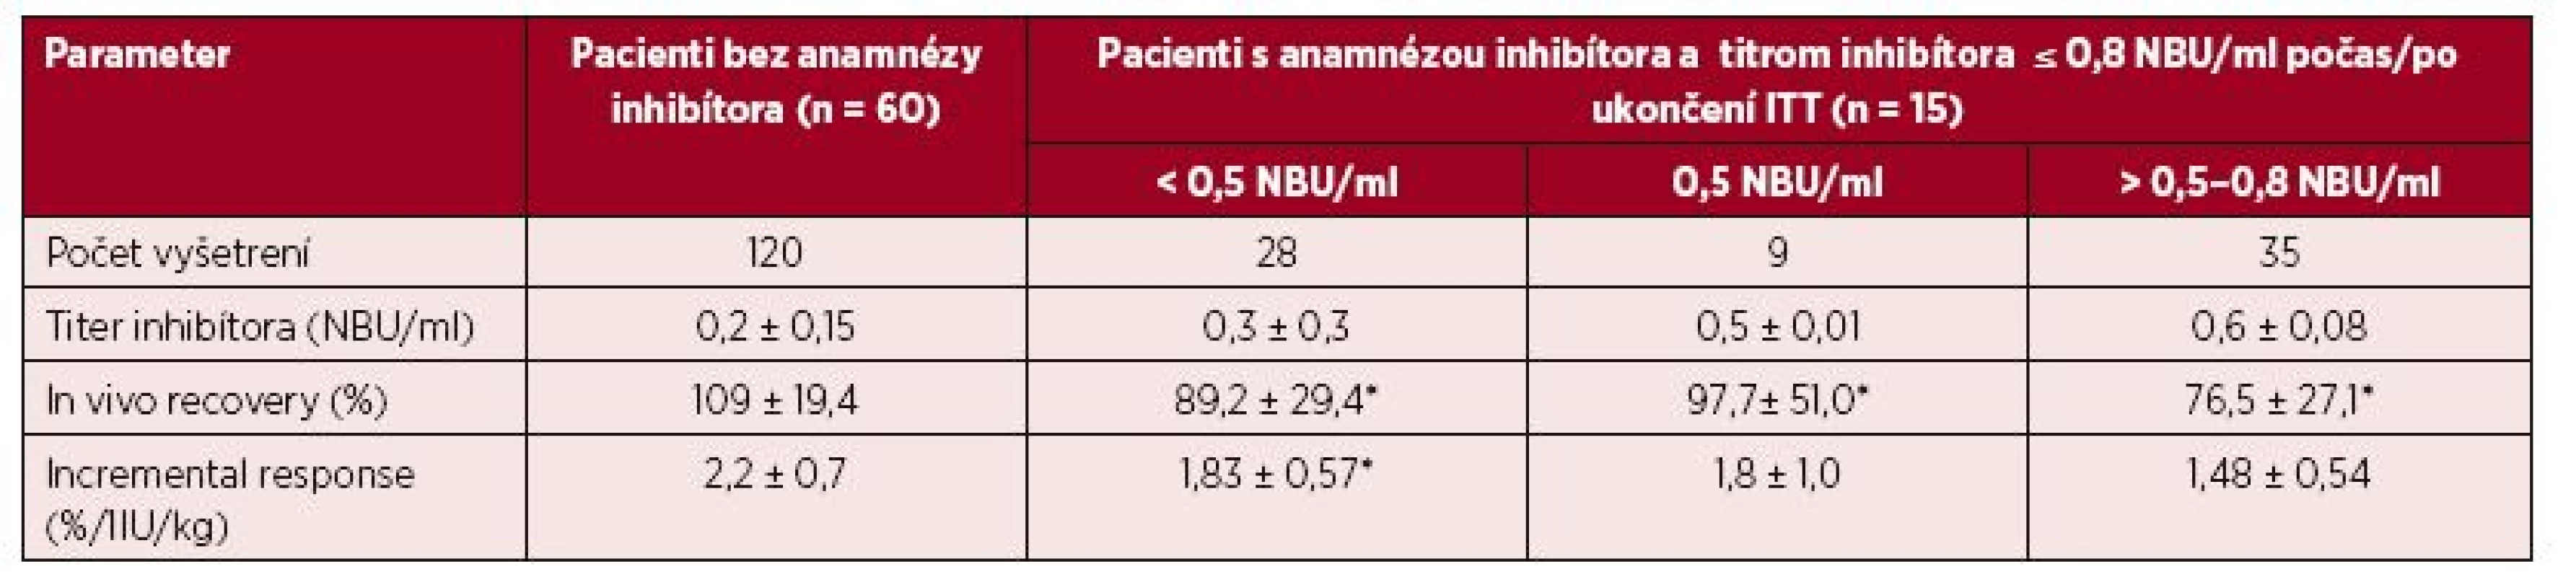 Parametre farmakodynamiky FVIII u 60 pacientov bez anamnézy inhibítora a u 15 pacientov 
s anamnézou inhibítora a ITT po dosiahnutí negativity inhibítora alebo redukcie titra ≤ 0,8 NBU/ml